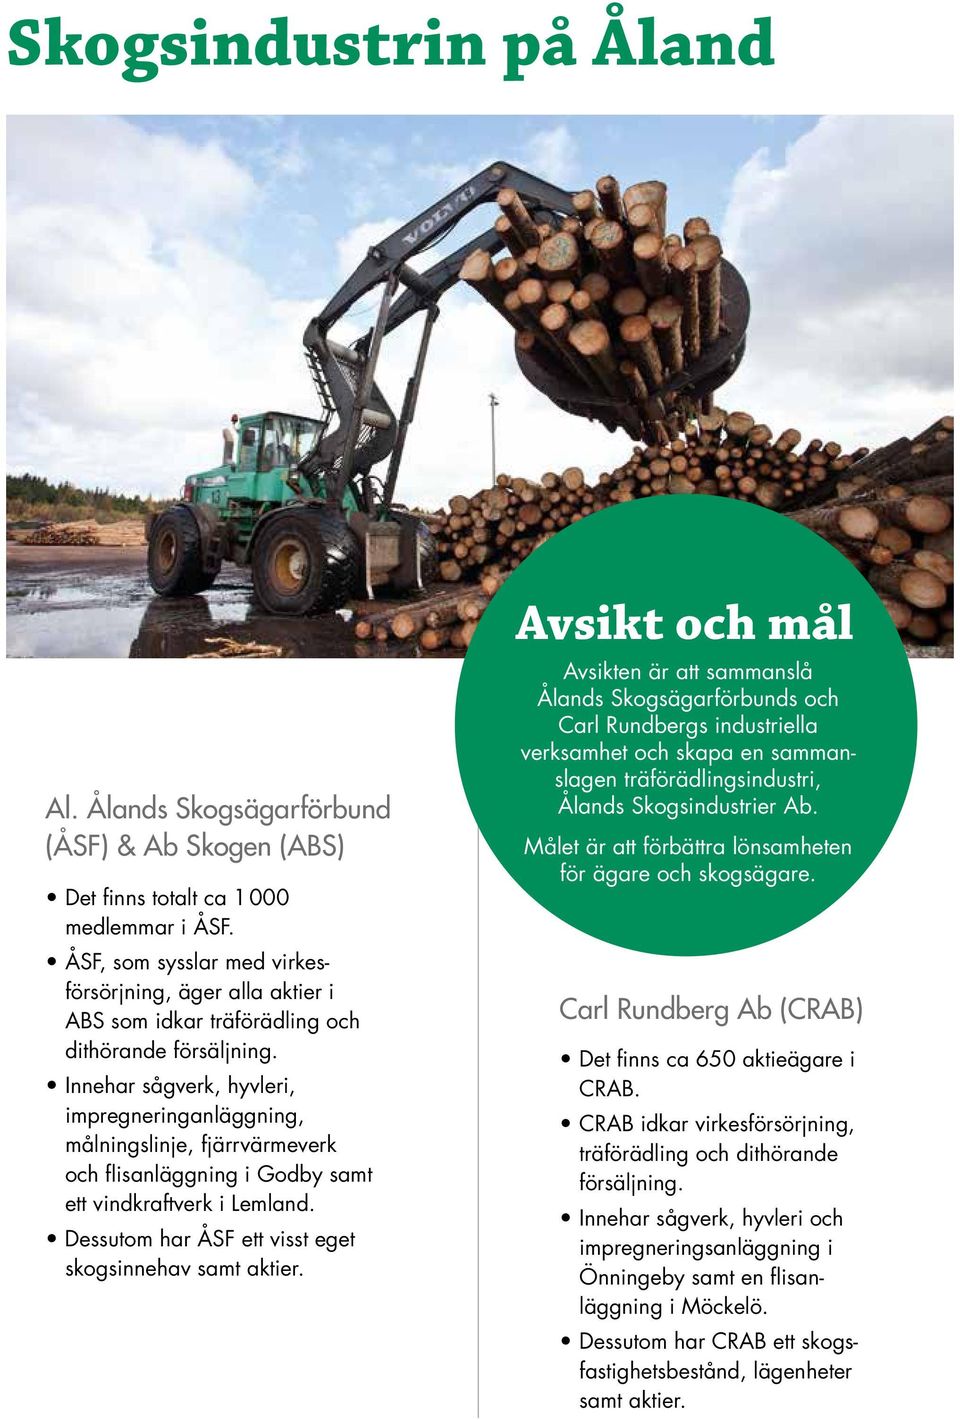 Innehar sågverk, hyvleri, impregneringanläggning, målningslinje, fjärrvärmeverk och flisanläggning i Godby samt ett vindkraftverk i Lemland. Dessutom har ÅSF ett visst eget skogsinnehav samt aktier.